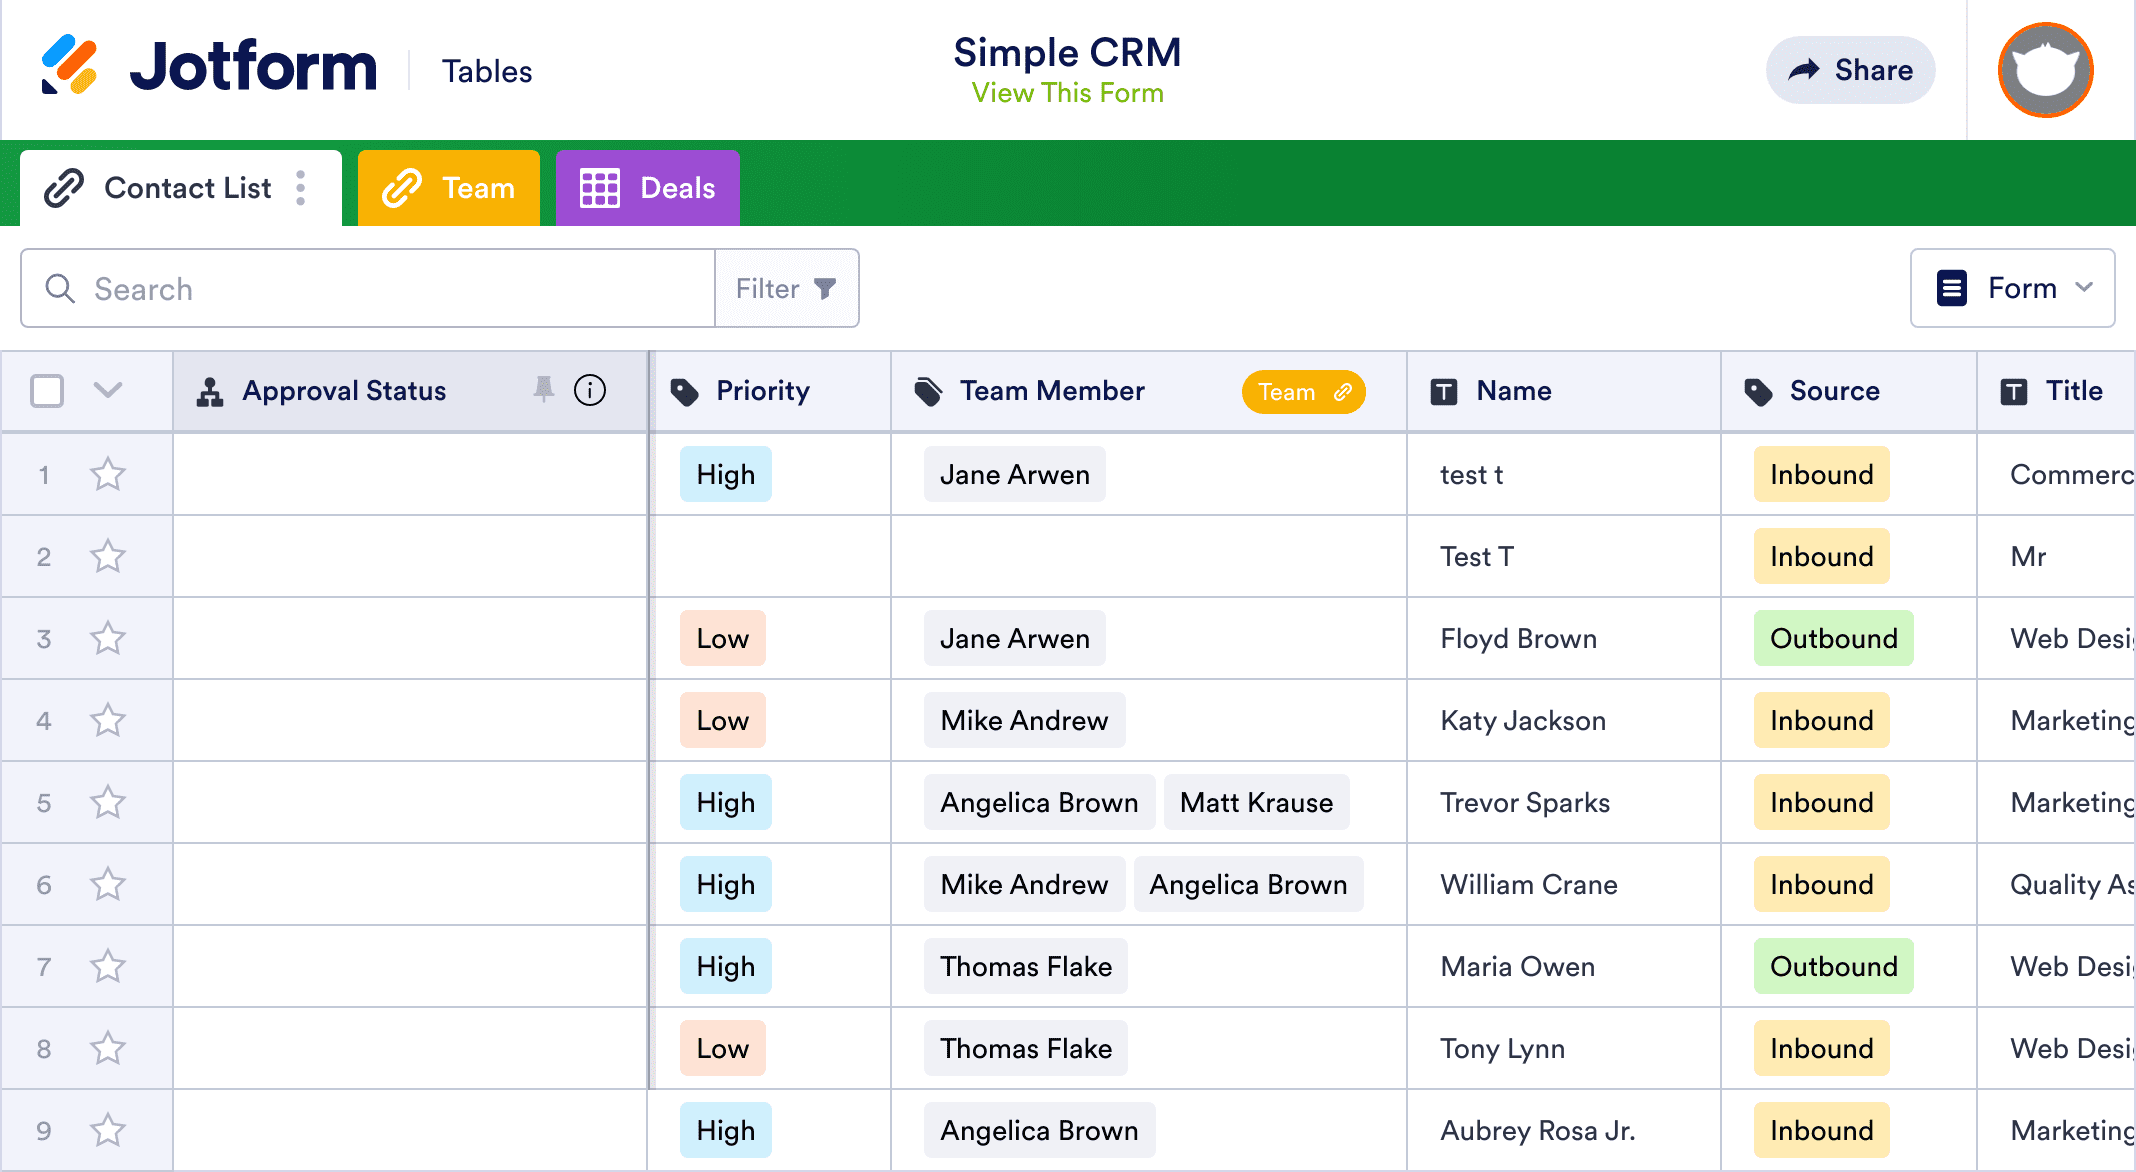 Simple CRM Template | Jotform Tables